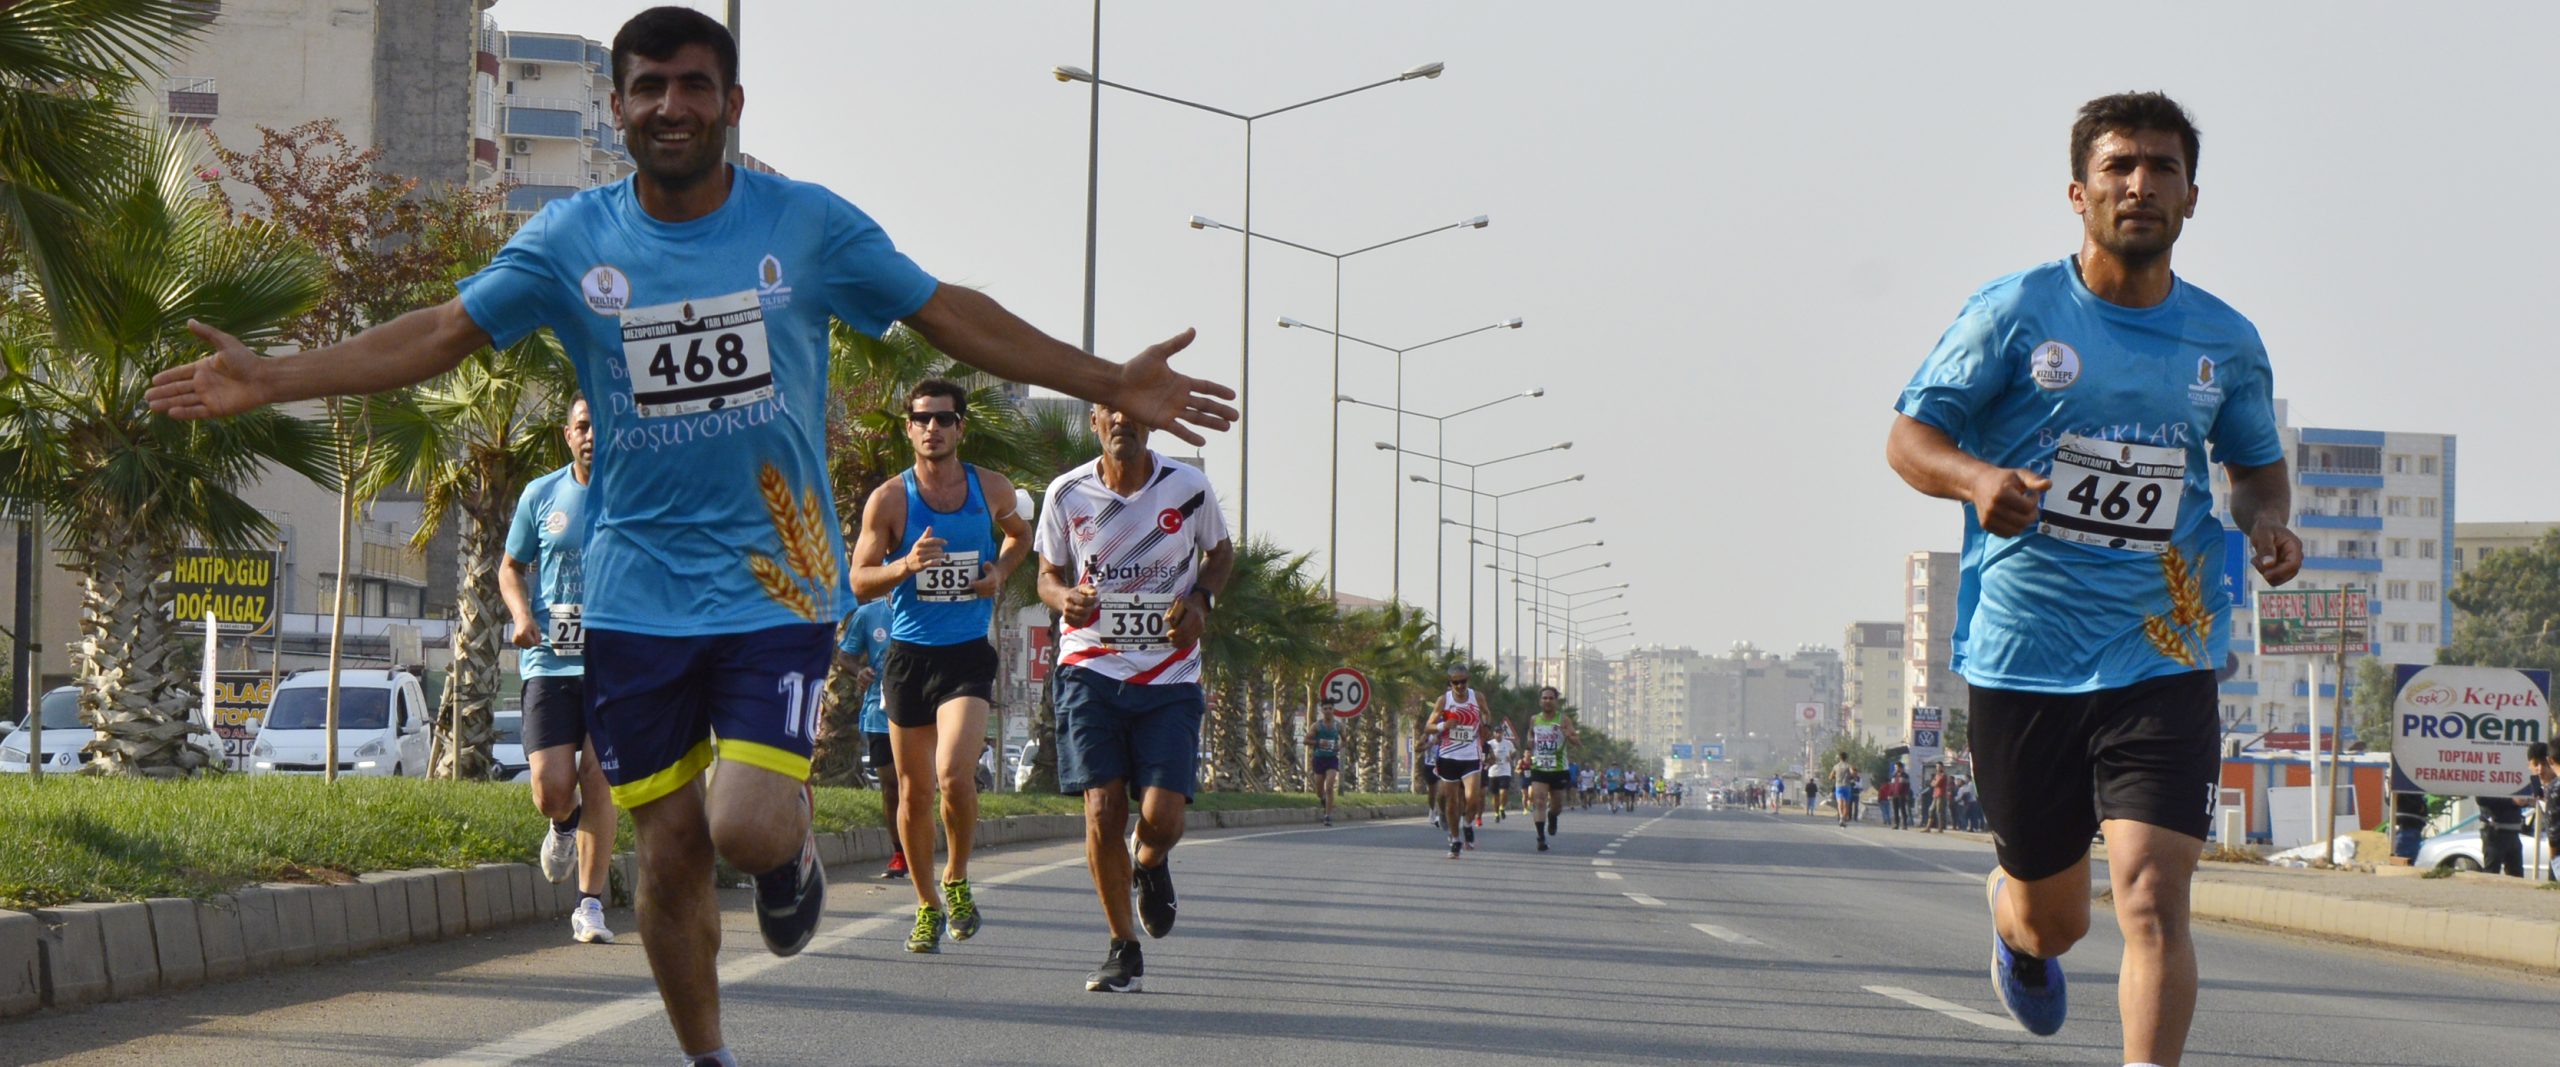 Uluslararası 1. Mezopotamya Yarı Maraton Koşusu festival havasında gerçekleşti